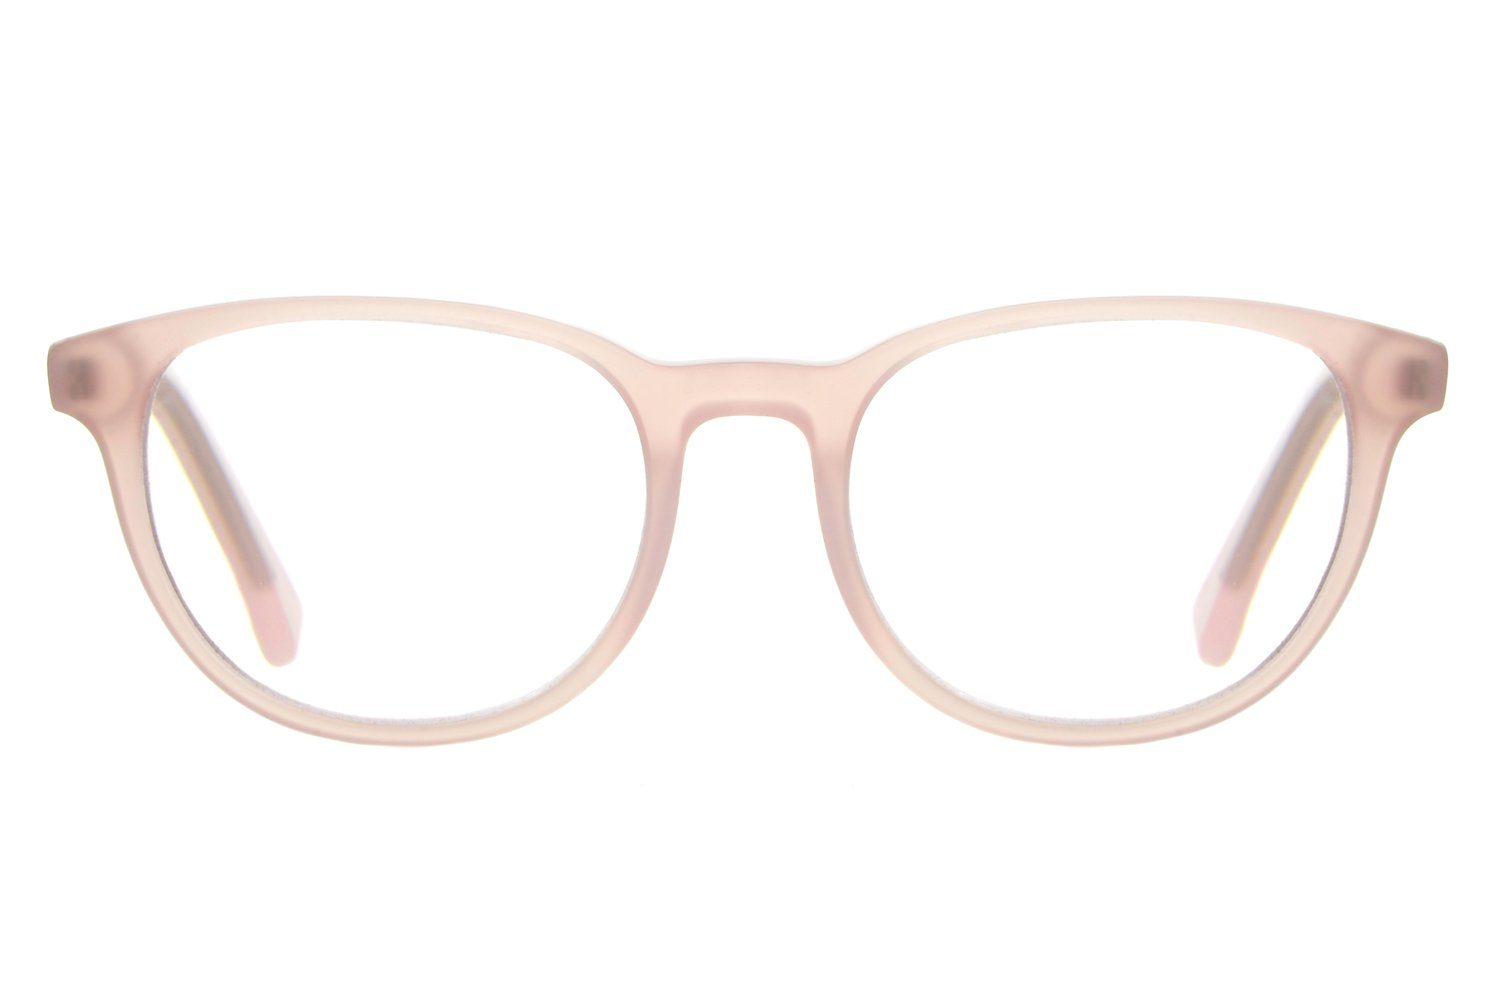 Edison & King Lesebrille »Soul Mate«, Moderne Azetatbrille mit großen  Gläsern in 4 wundervollen glänzenden Nude-Tönen. online kaufen | OTTO